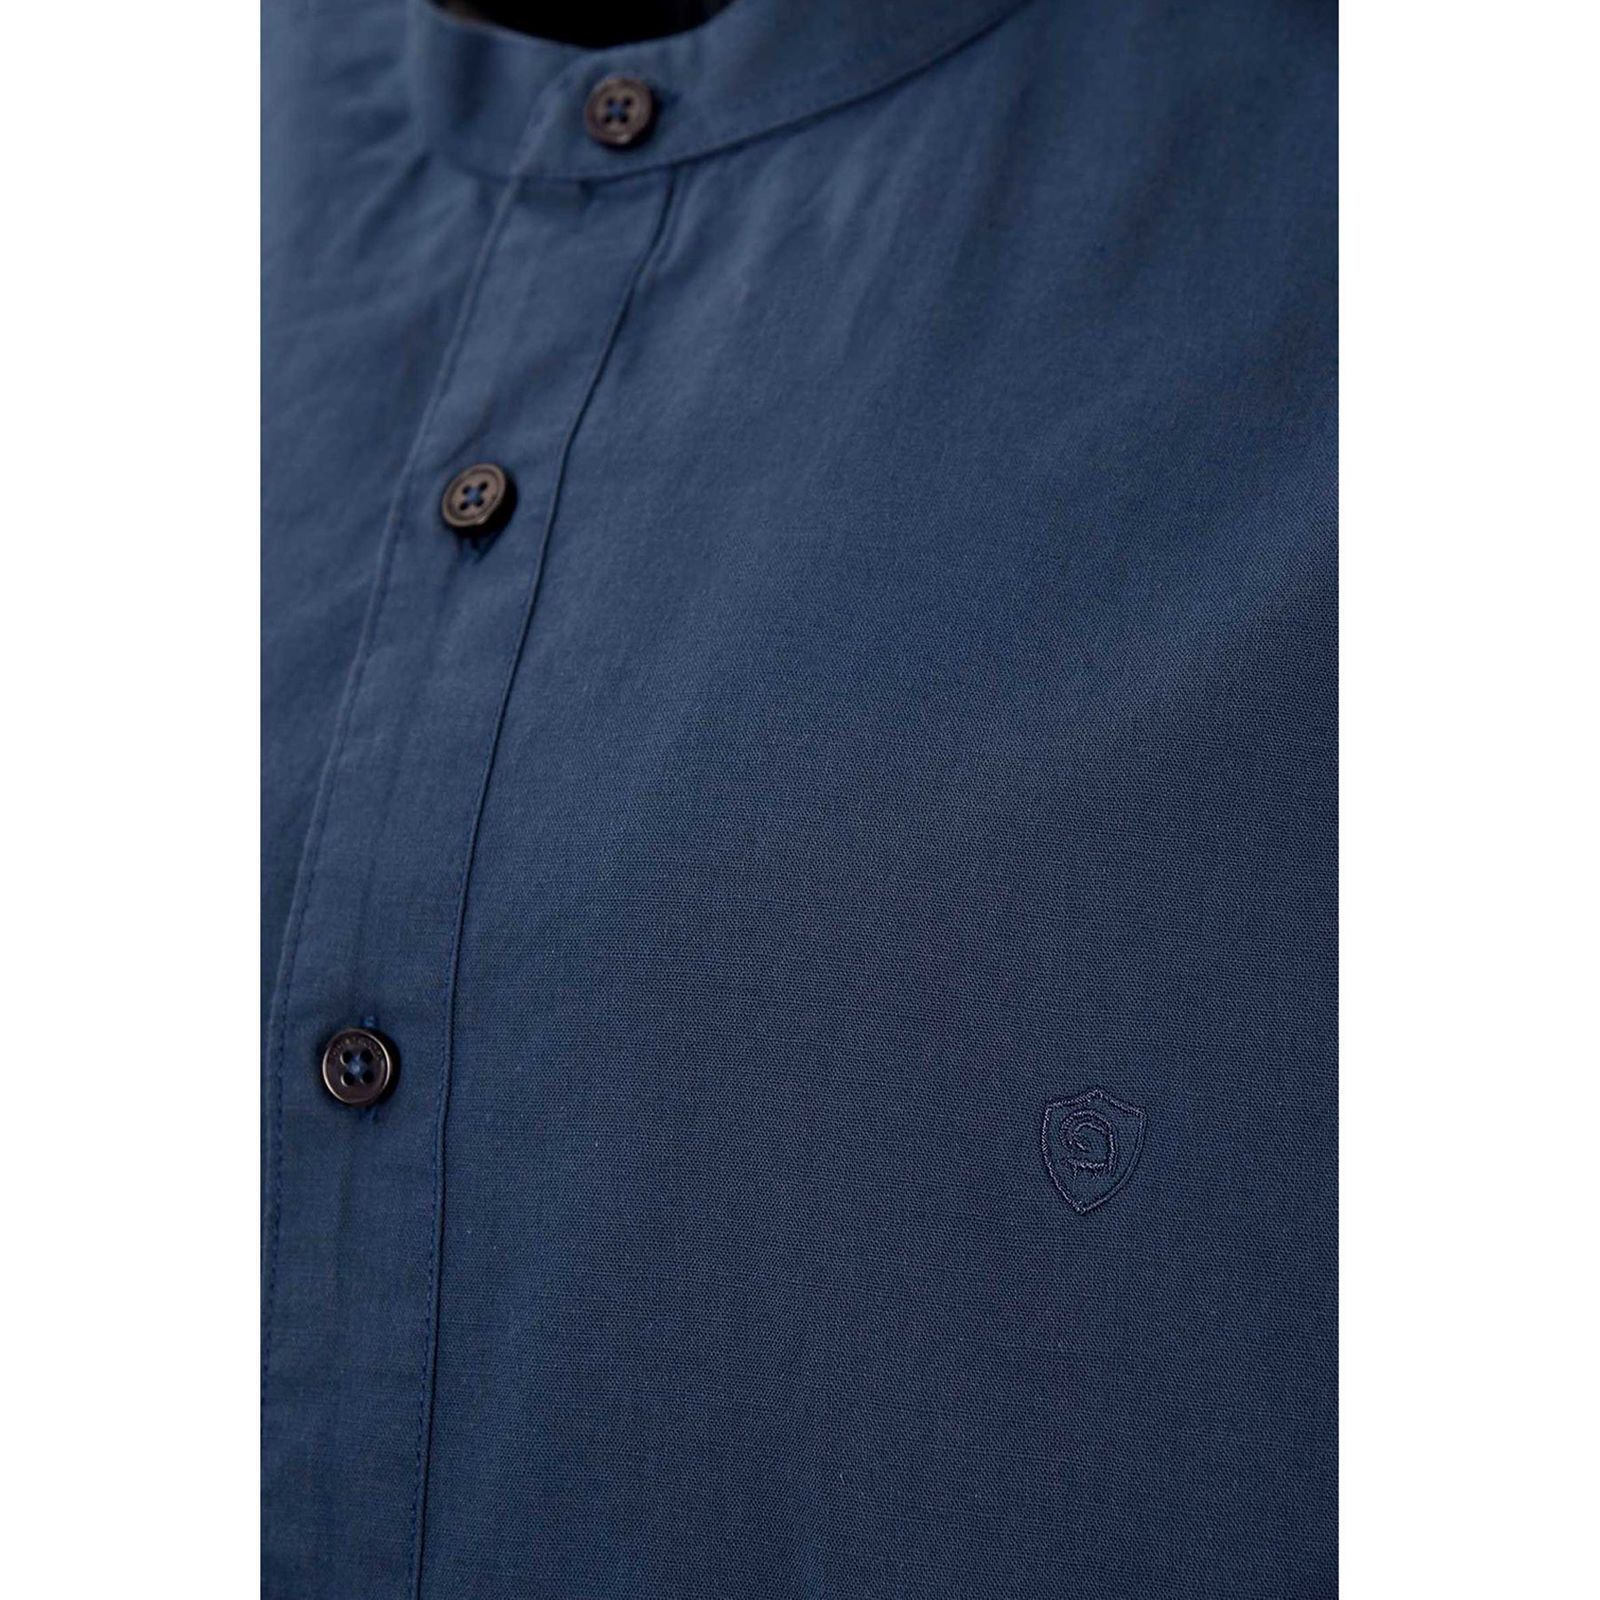 پیراهن آستین بلند مردانه بادی اسپینر مدل 1118 کد 1 رنگ آبی -  - 4